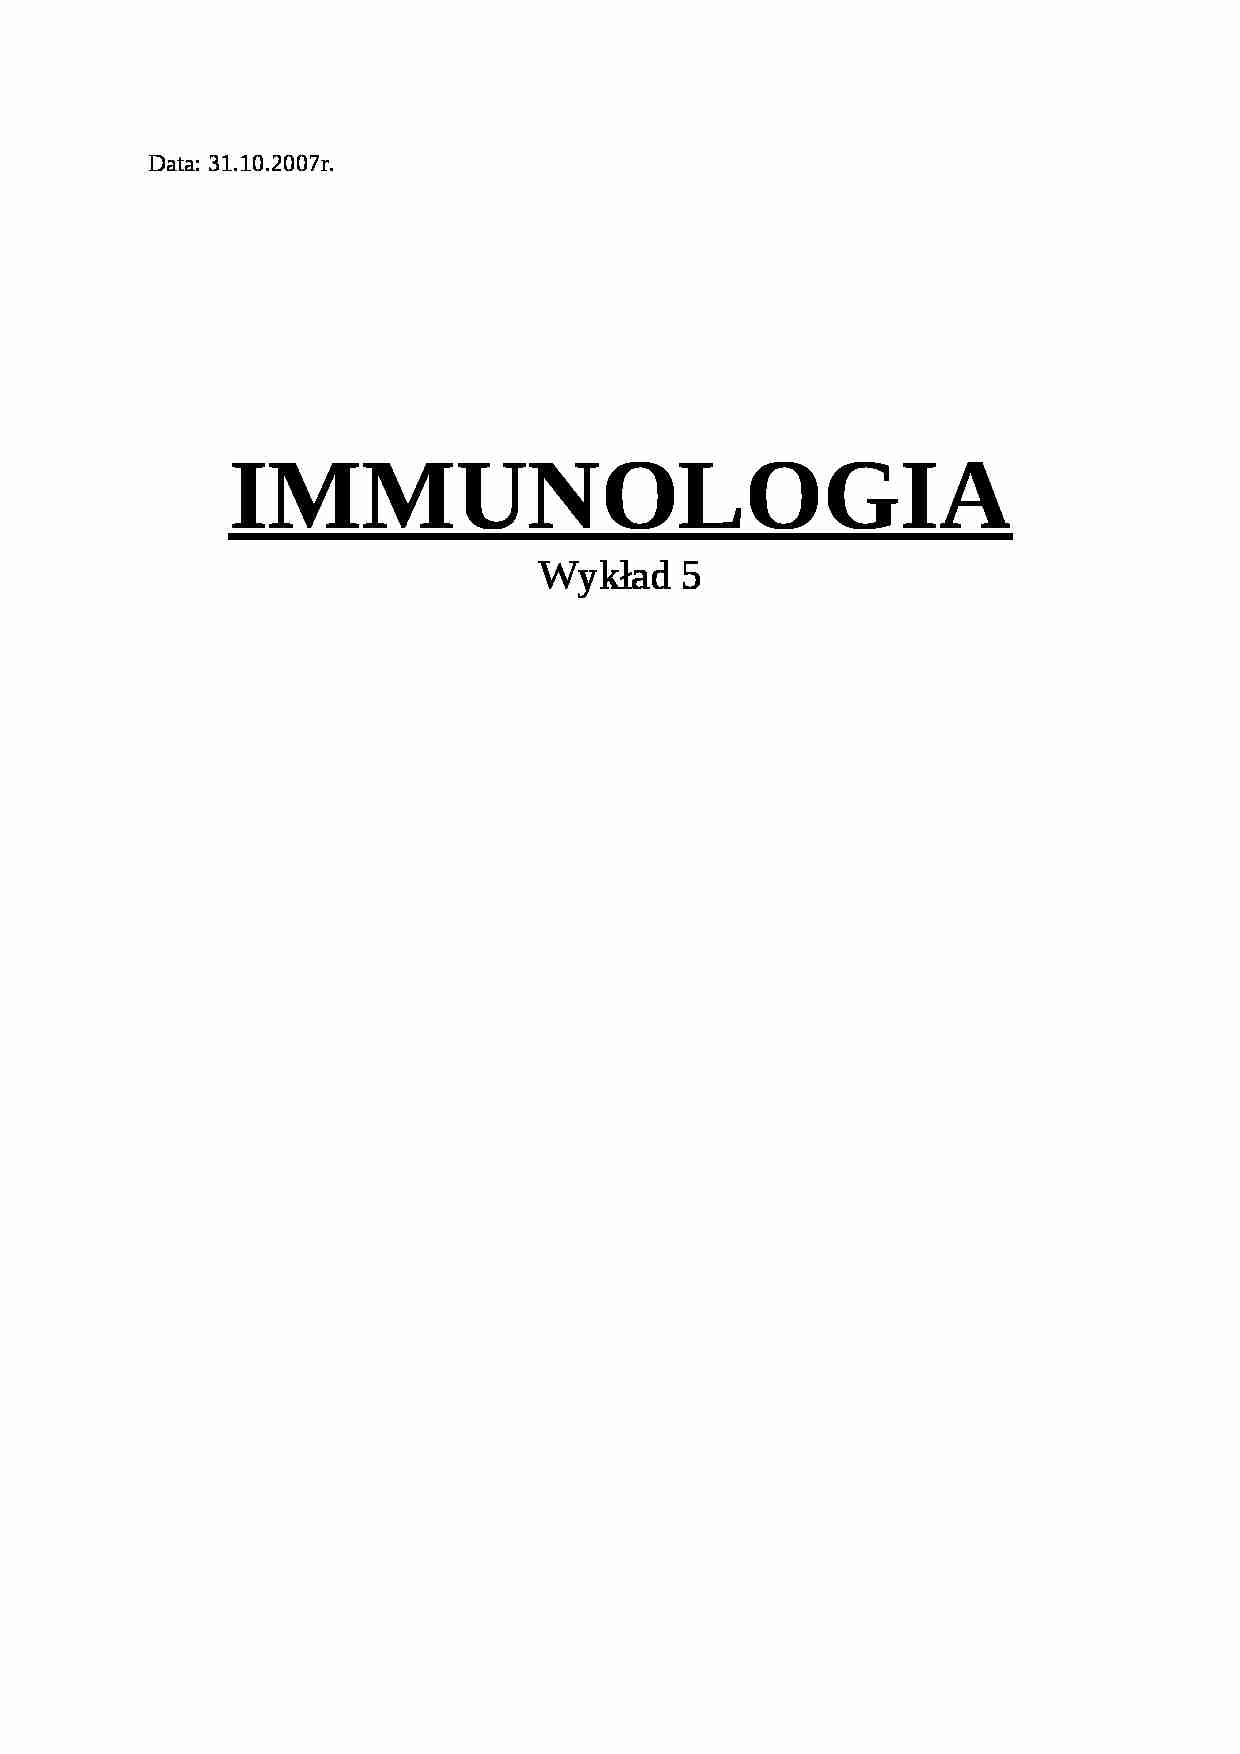 Immunologia - wykład 5 - strona 1